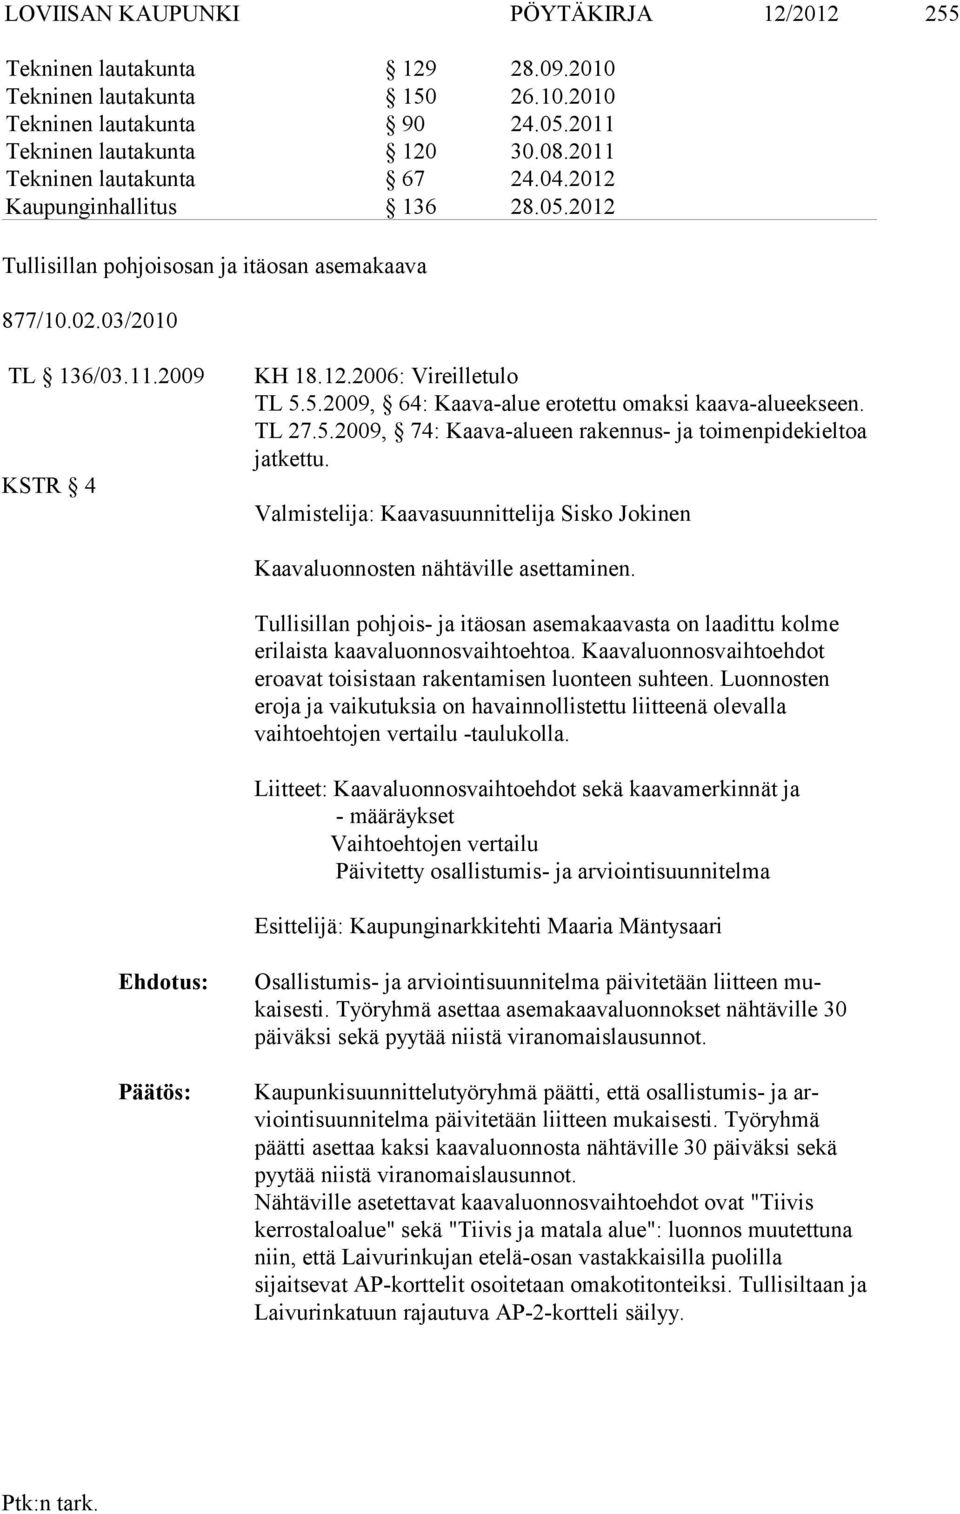 TL 27.5.2009, 74: Kaava-alueen rakennus- ja toimenpidekieltoa jatkettu. Valmistelija: Kaavasuunnittelija Sisko Jokinen Kaavaluonnosten nähtäville asettaminen.